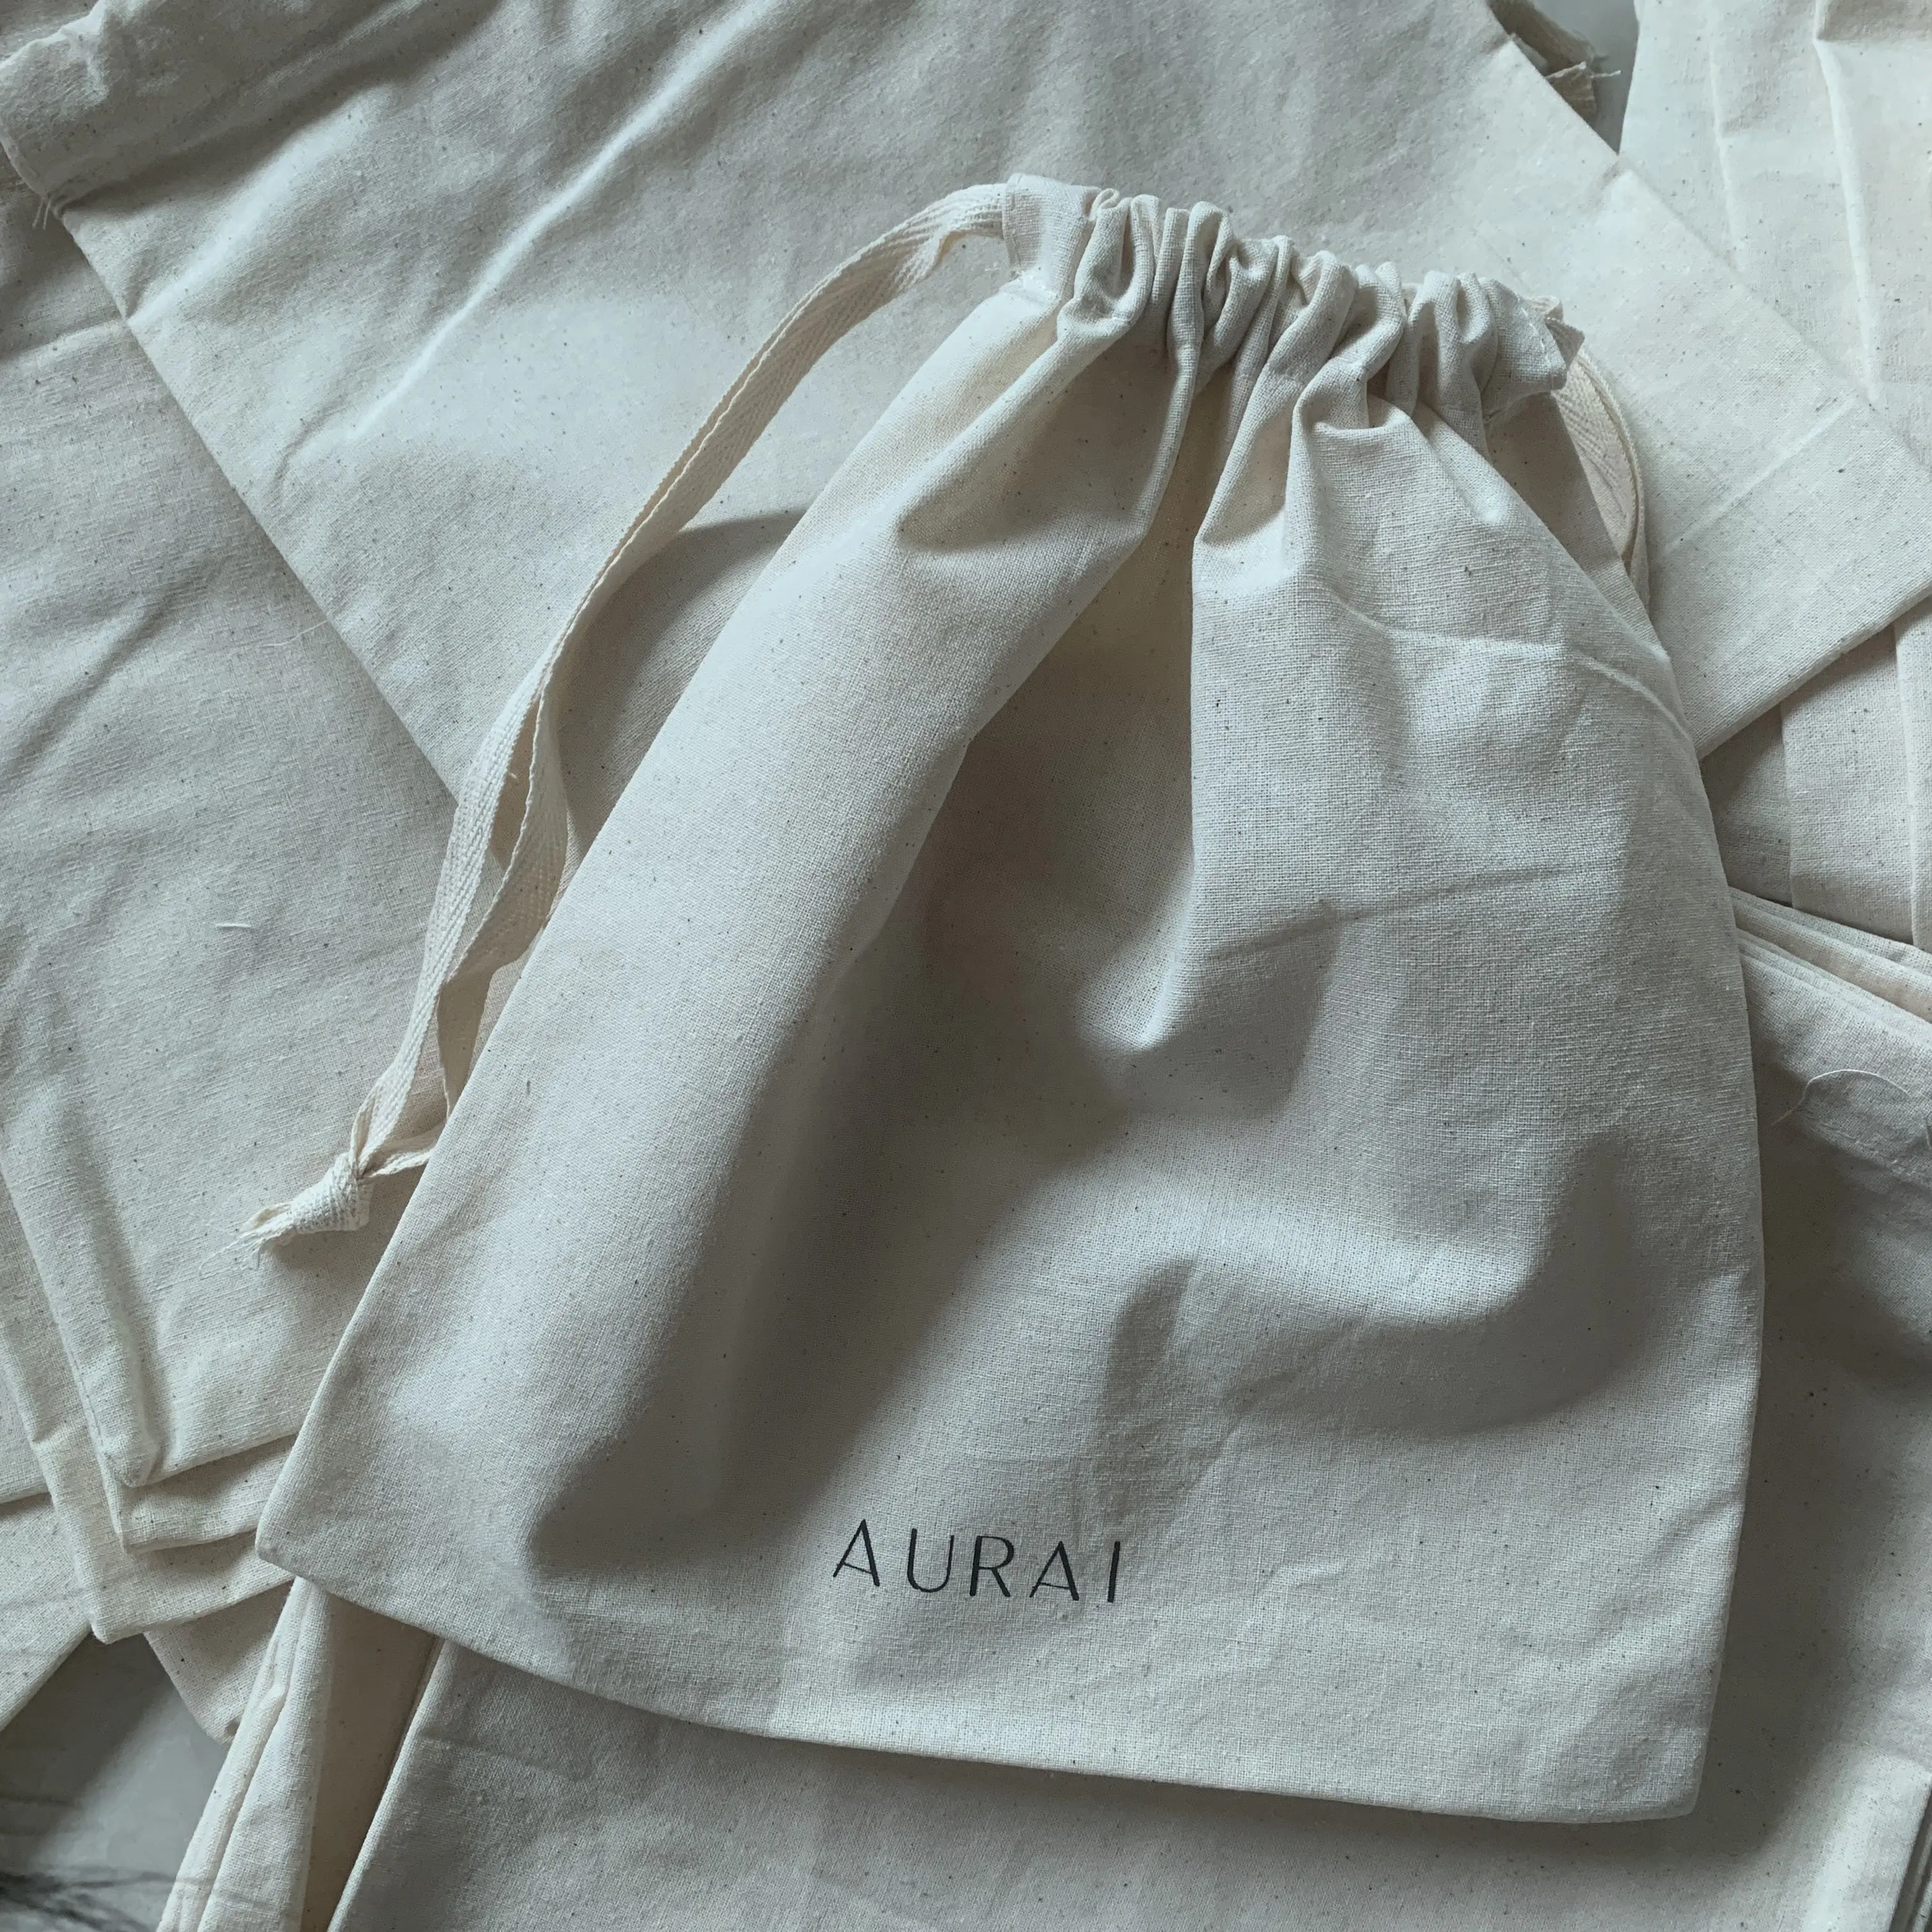 Promozionale a buon mercato in cotone con coulisse borsa della spesa di tela per imballaggio gioielli sacchetto regalo con Logo